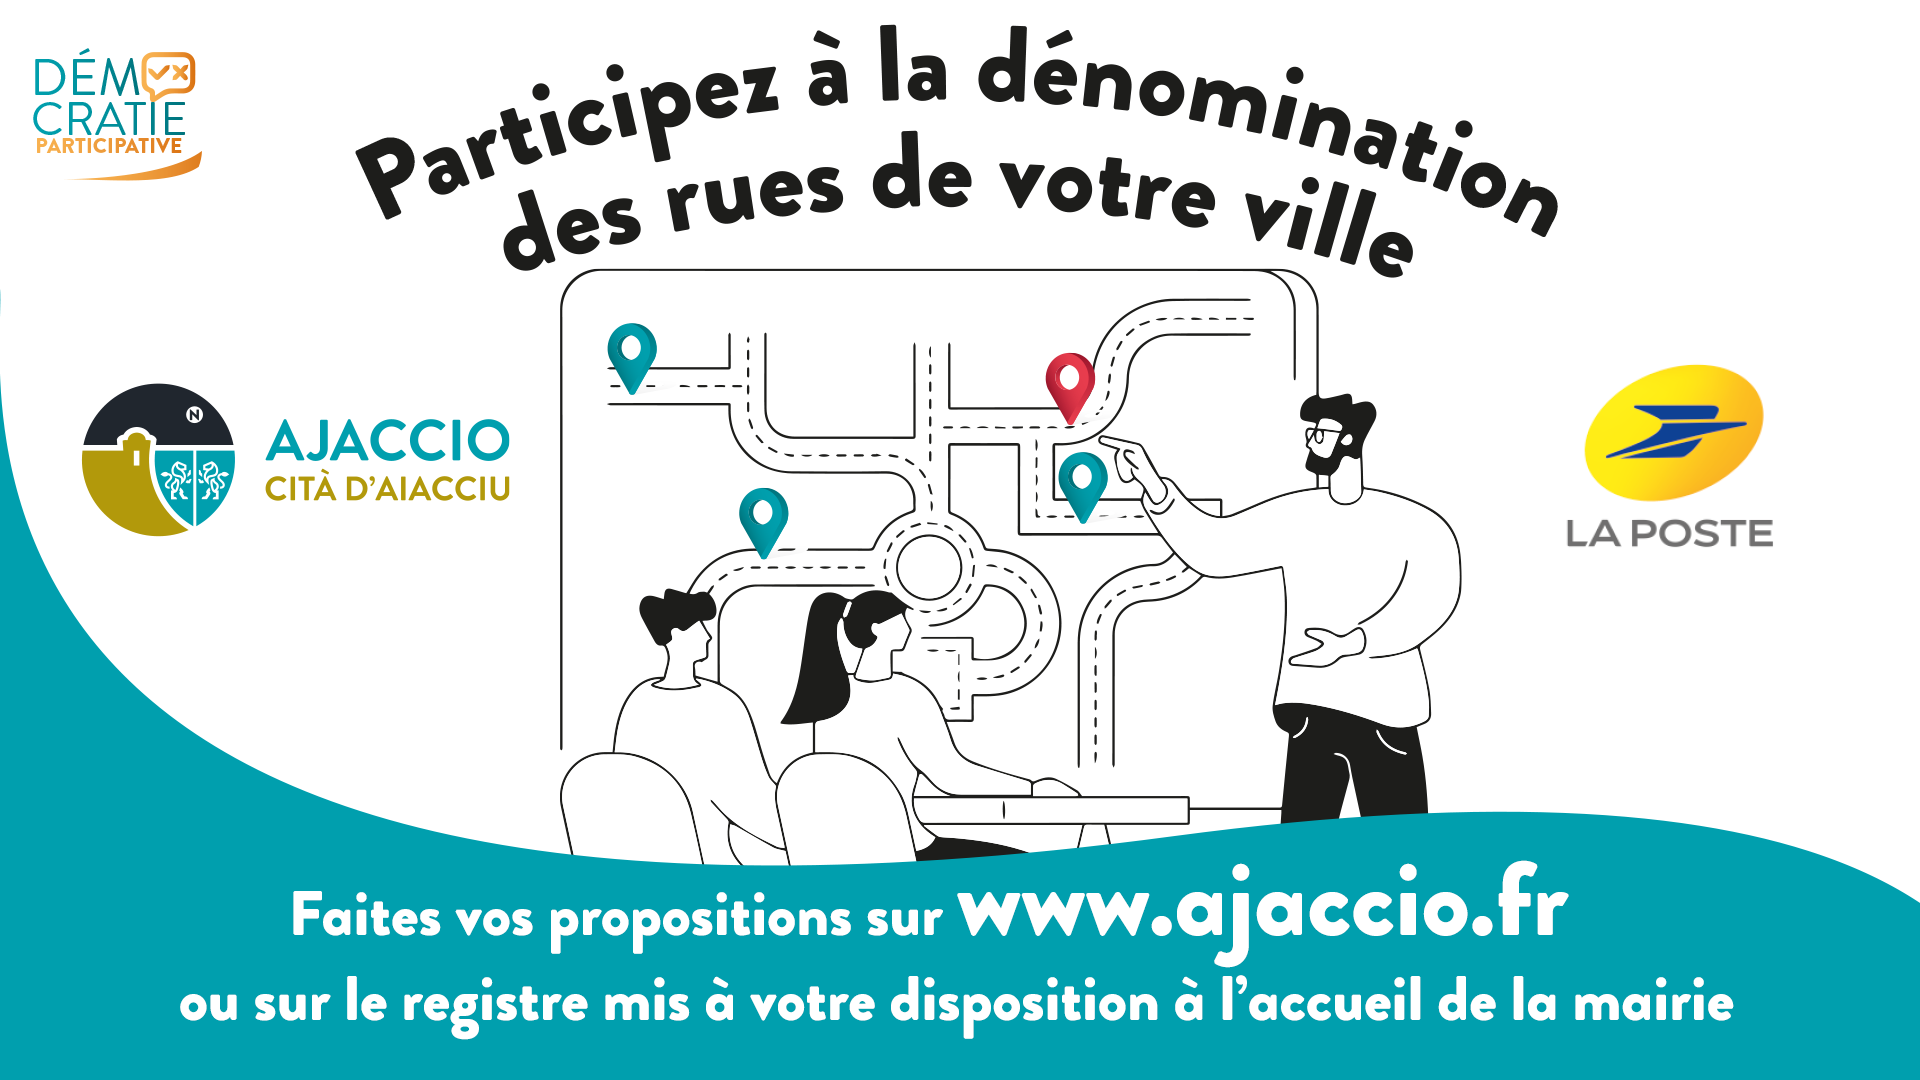 CONSULTATION CITOYENNE : Participez à la dénomination des rues d’Ajaccio !